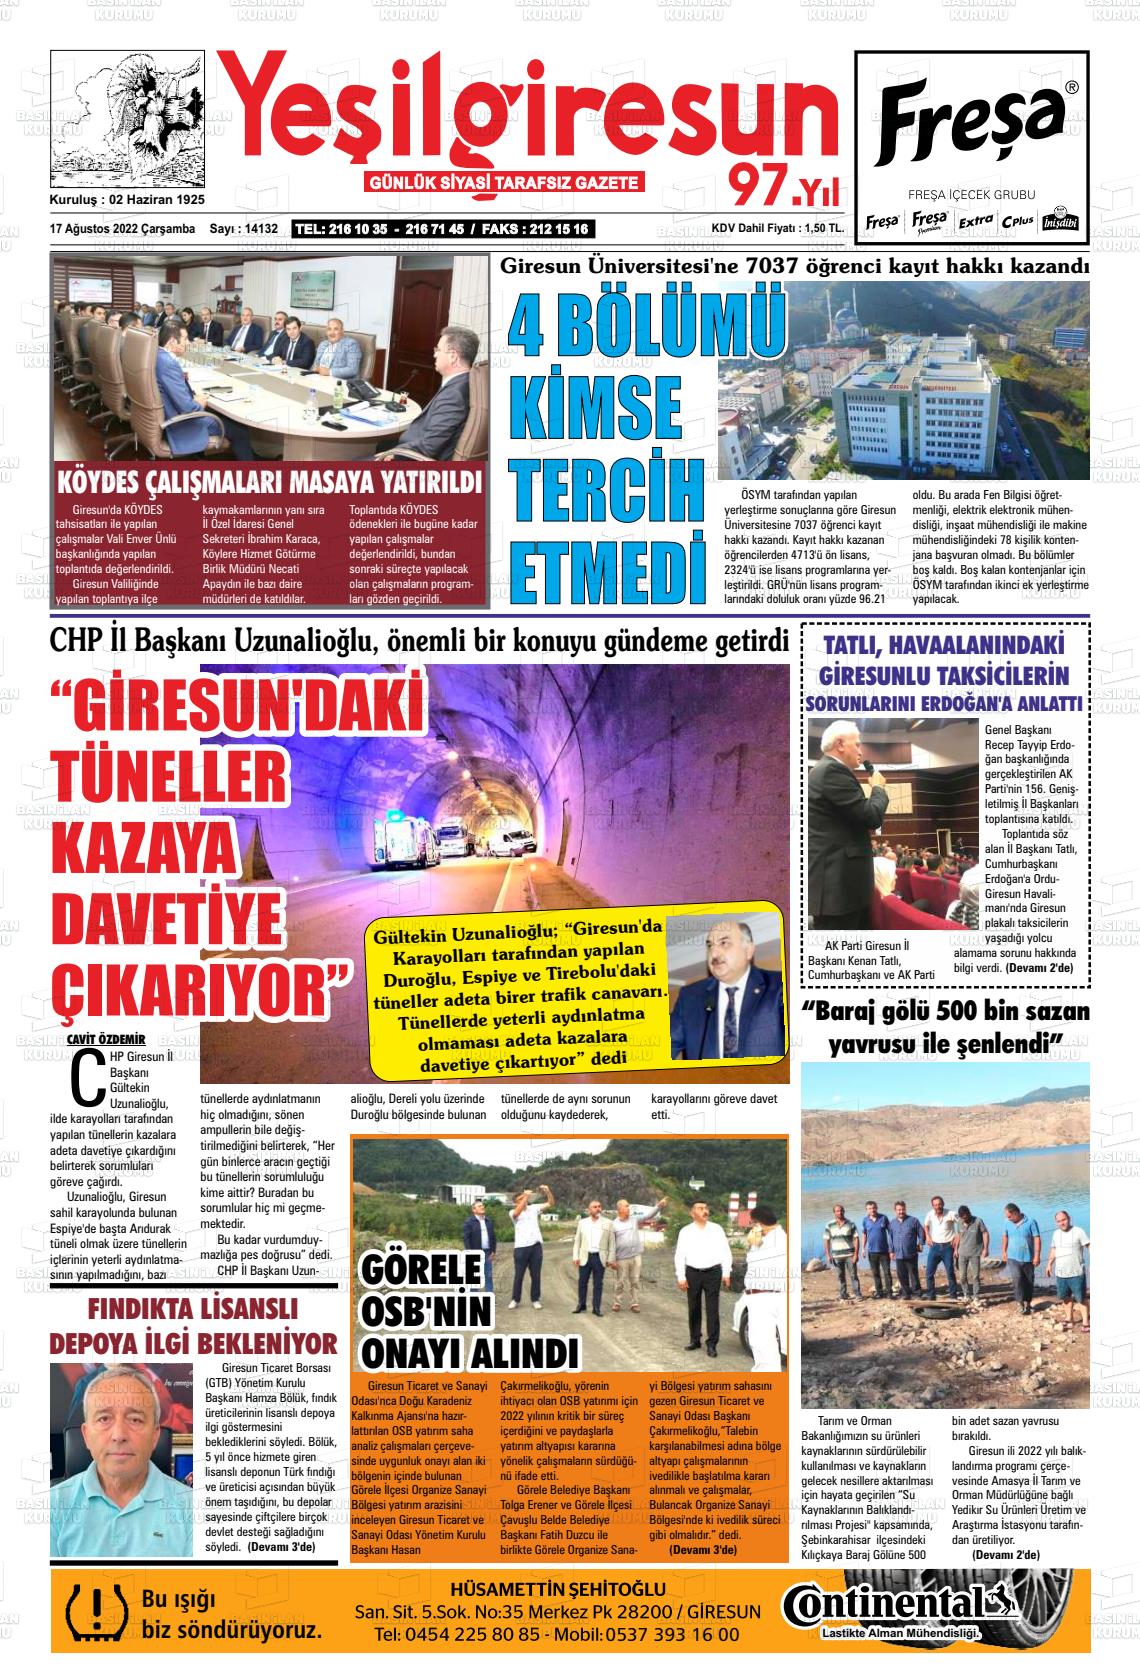 17 Ağustos 2022 Yeşil Giresun Gazete Manşeti